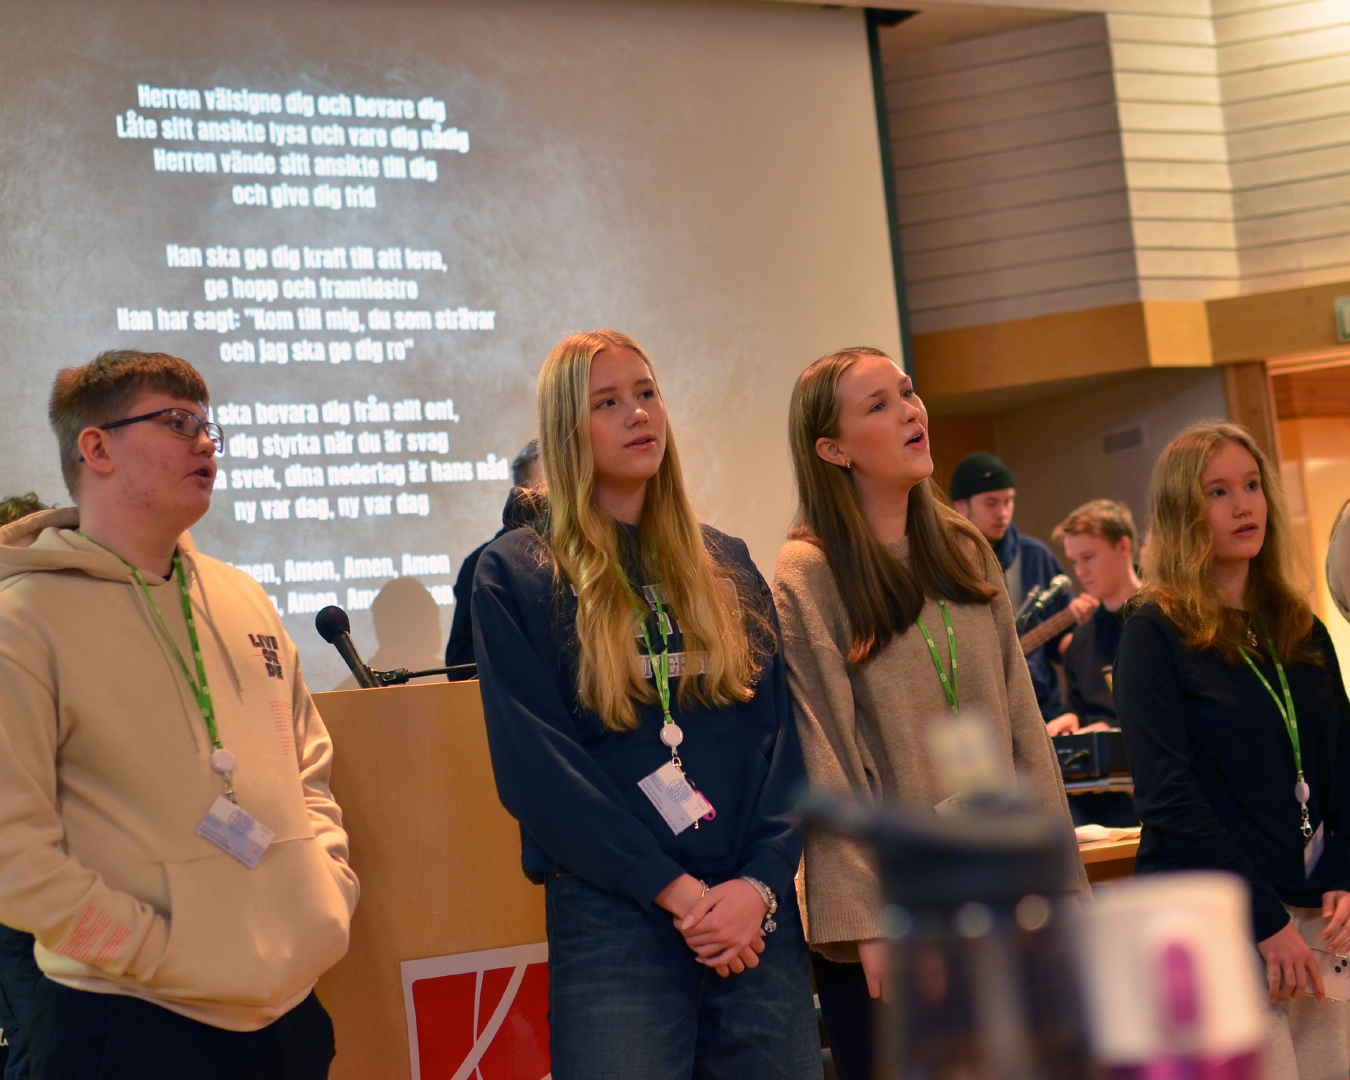 Fyra ungdomar står bredvid varandra framför en skärm som visar en sångtext.